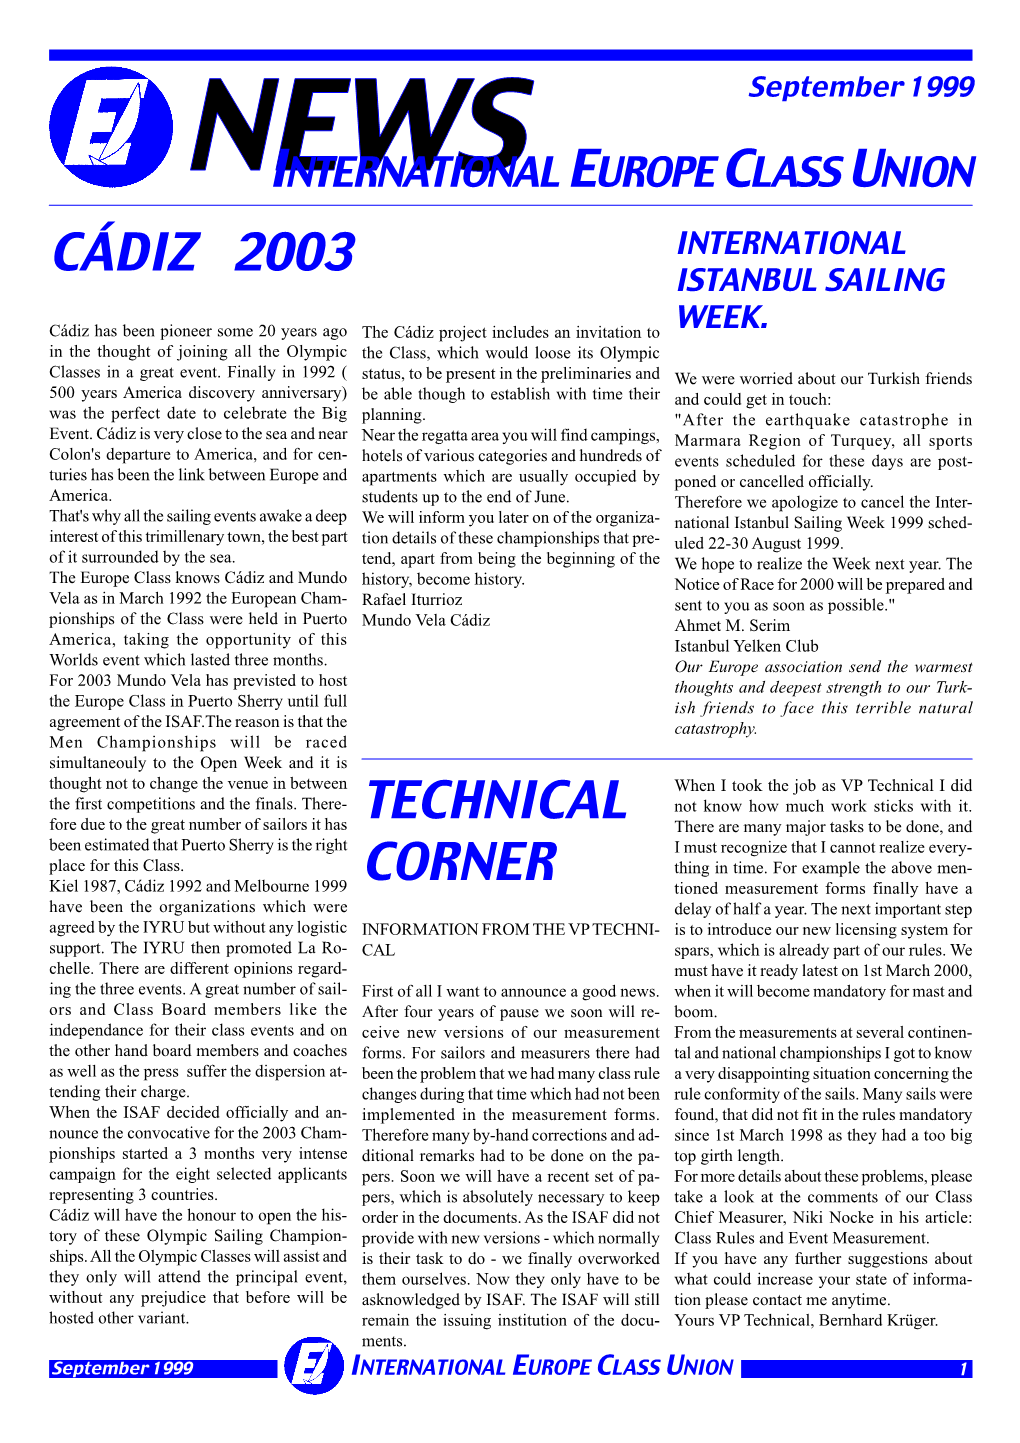 Technical Corner Cádiz 2003